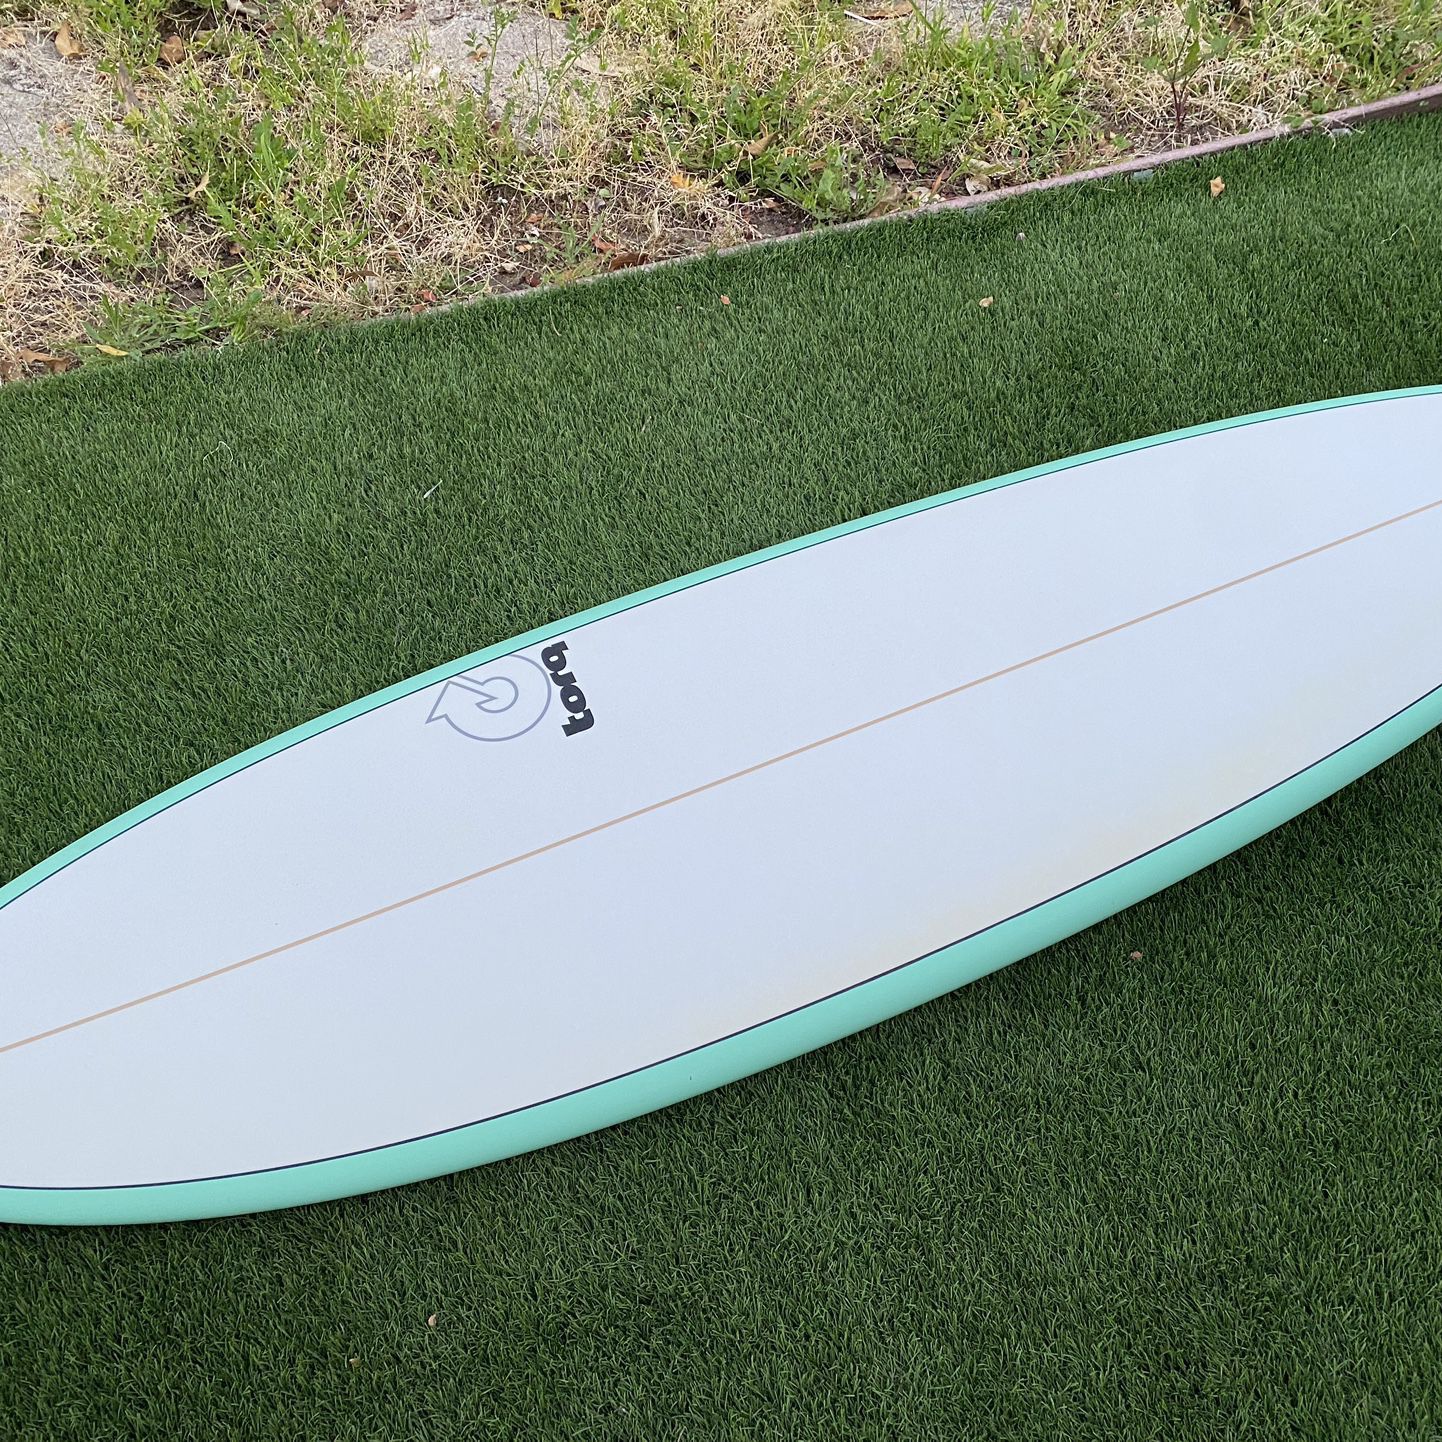 Torq ModFun Surfboard 